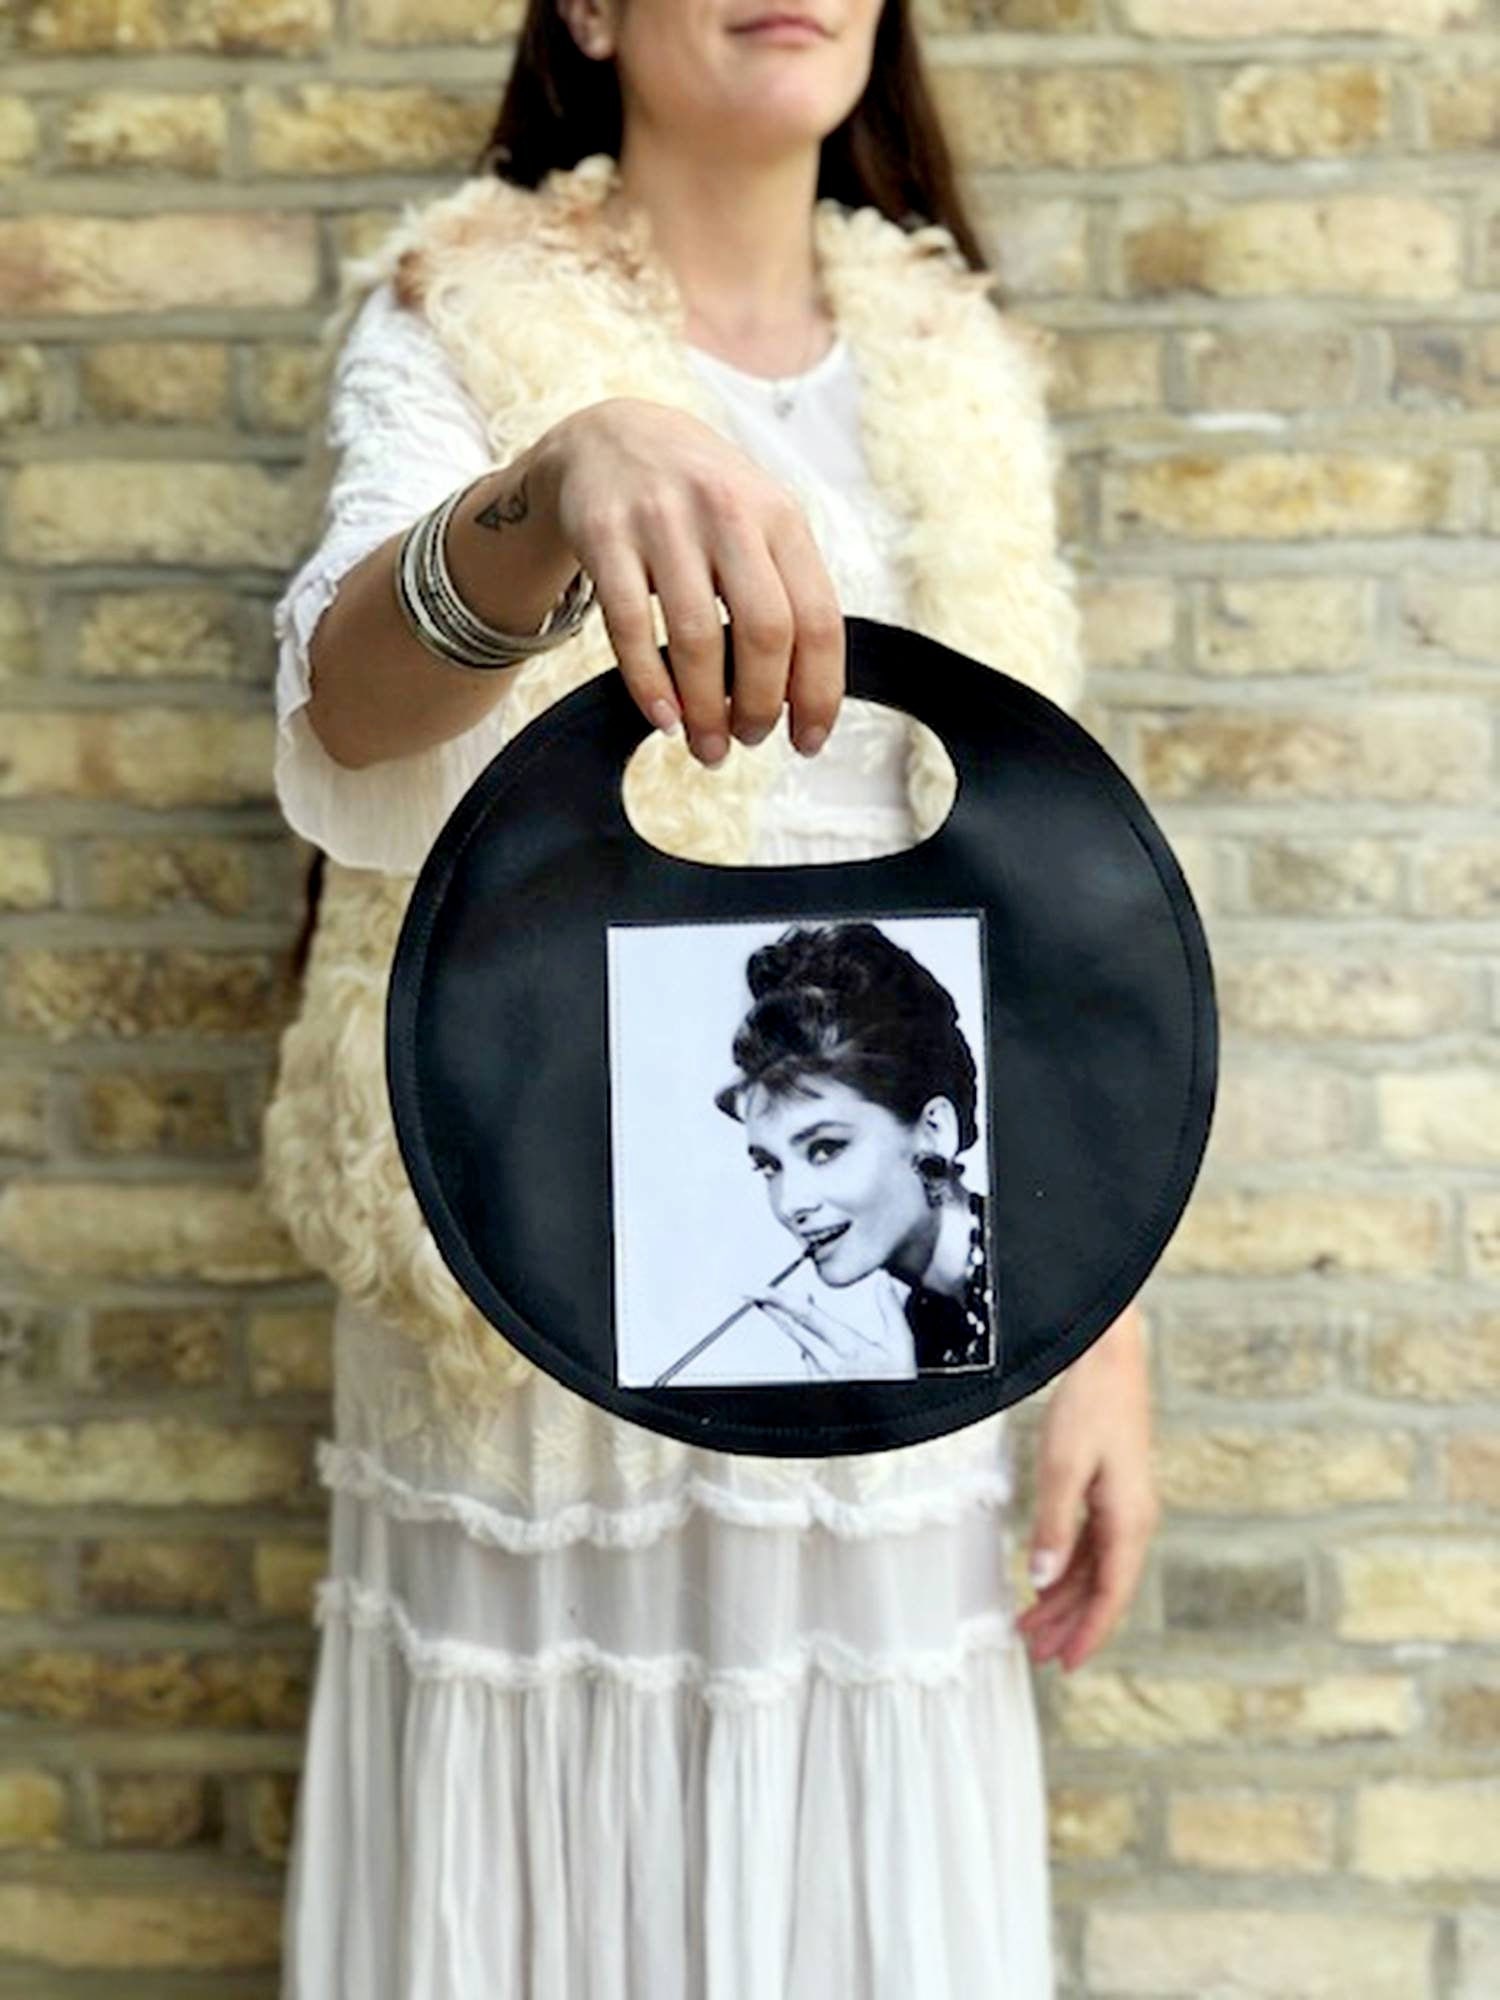 Buy Audrey Hepburn Handbag 60s Leather Bag Retro Vinyl Bag Online